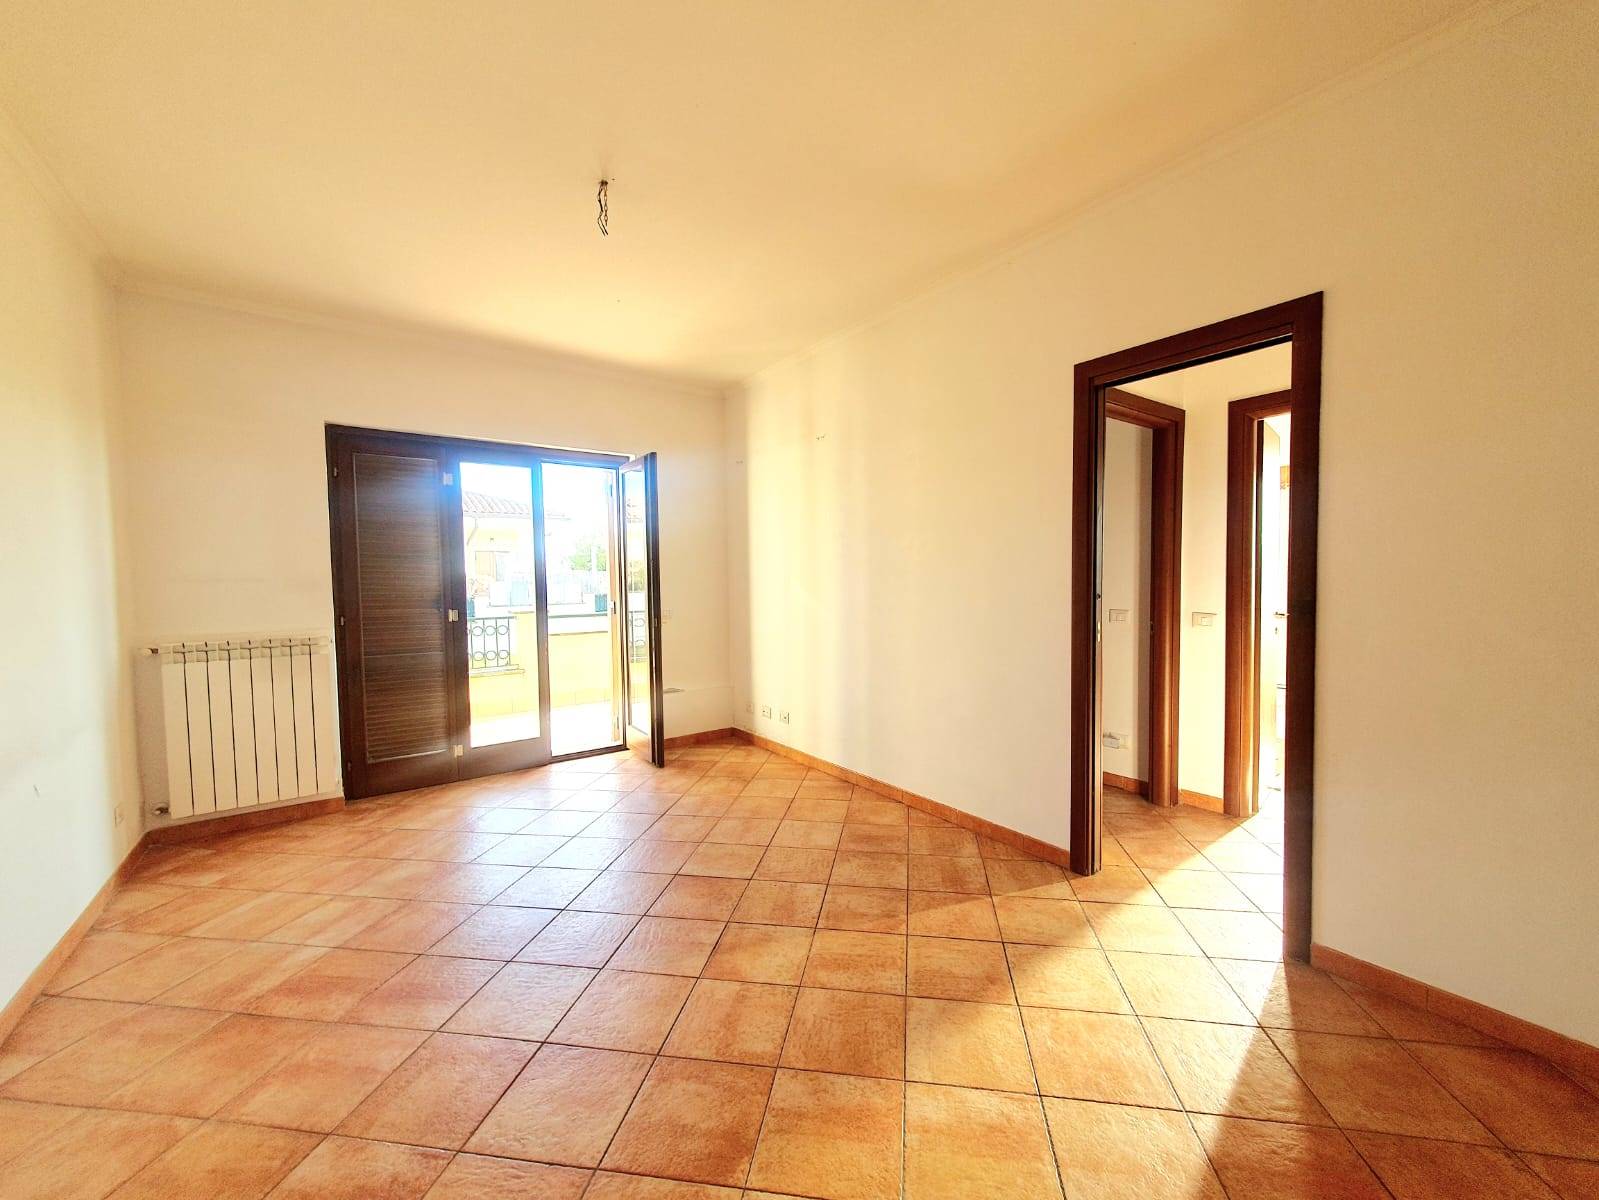 Appartamento in vendita a Fiano Romano, 3 locali, prezzo € 125.000 | PortaleAgenzieImmobiliari.it